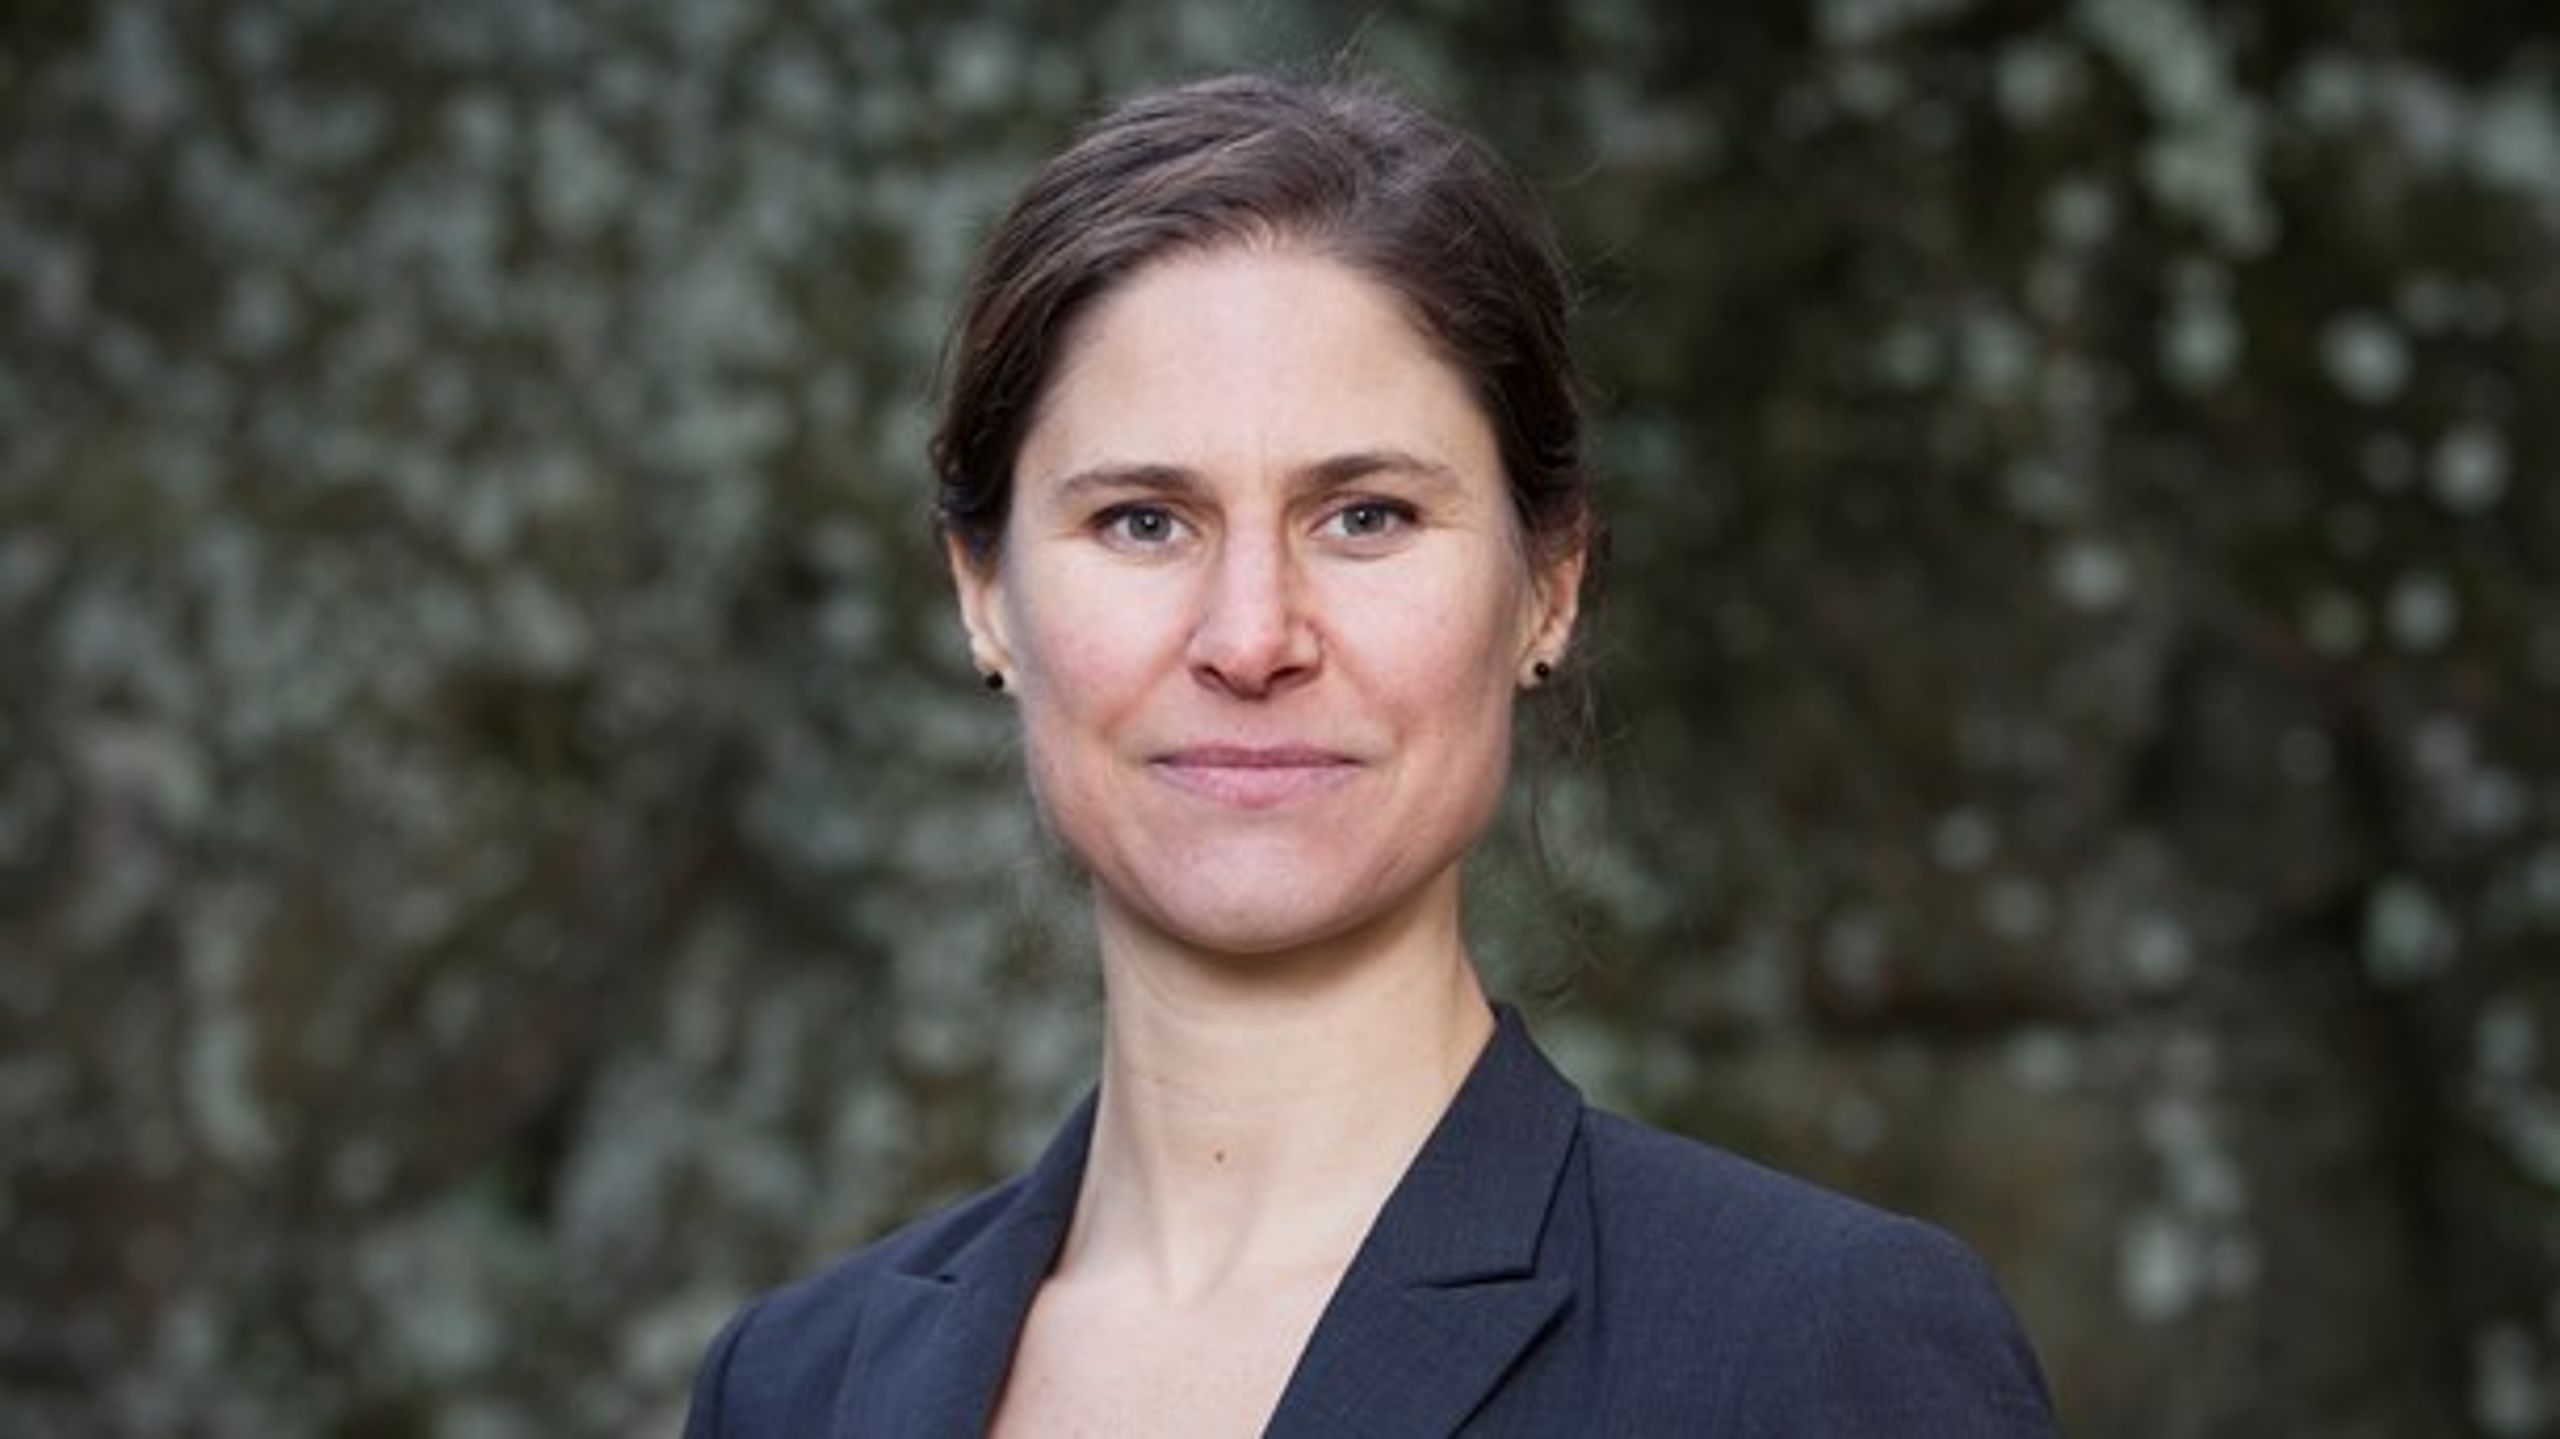 Johanna Sandahl, ordförande Naturskyddsföreningen